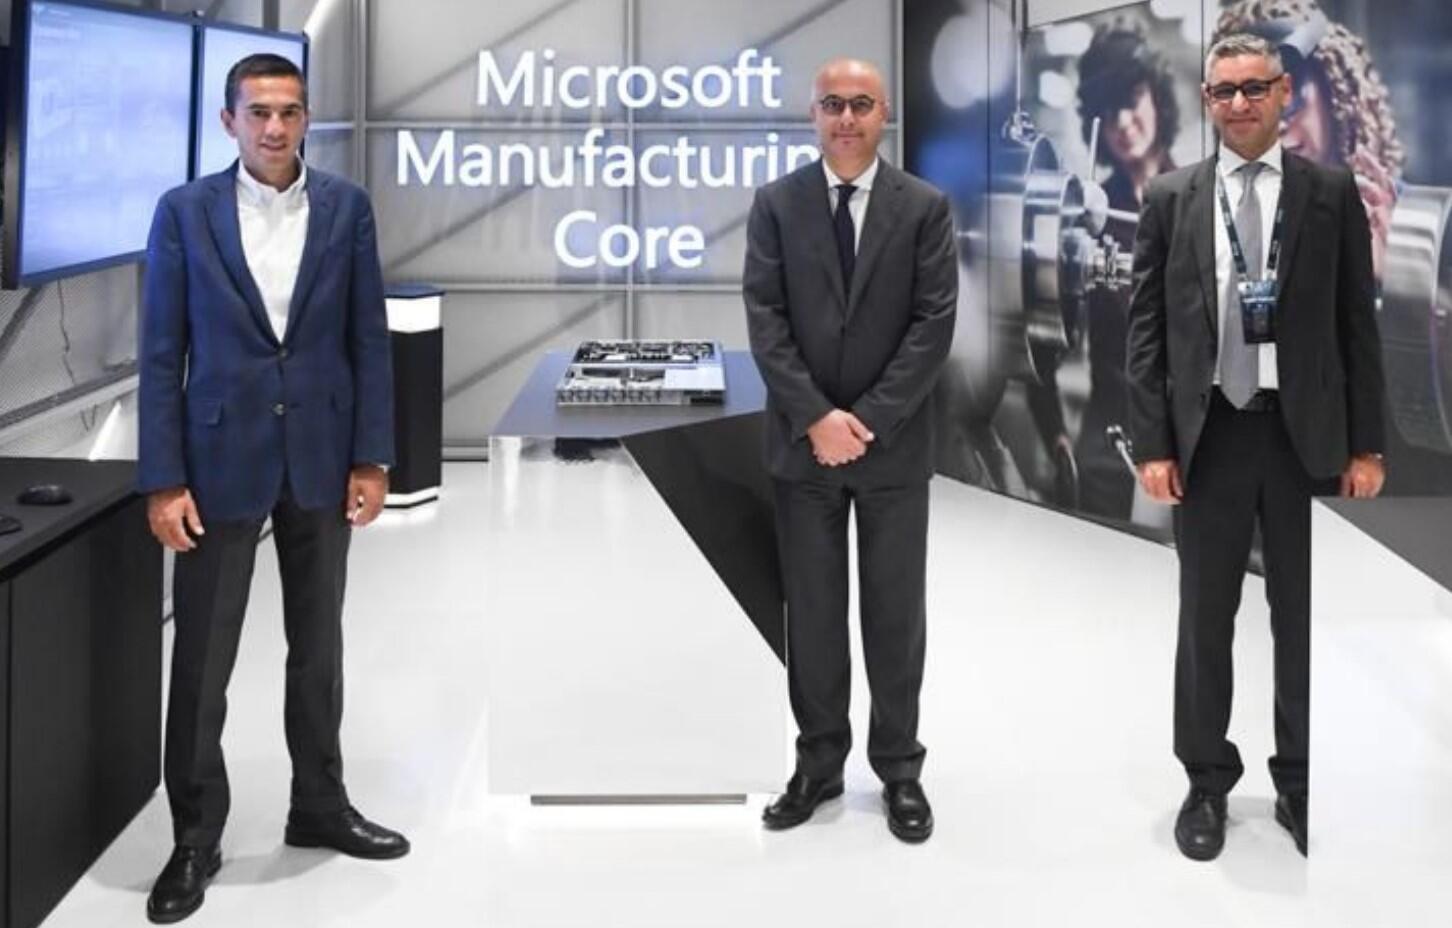 Ο περιφερειακός πρόεδρος της Microsoft στη Μέση Ανατολή και την Αφρική επισκέφθηκε την Τουρκία